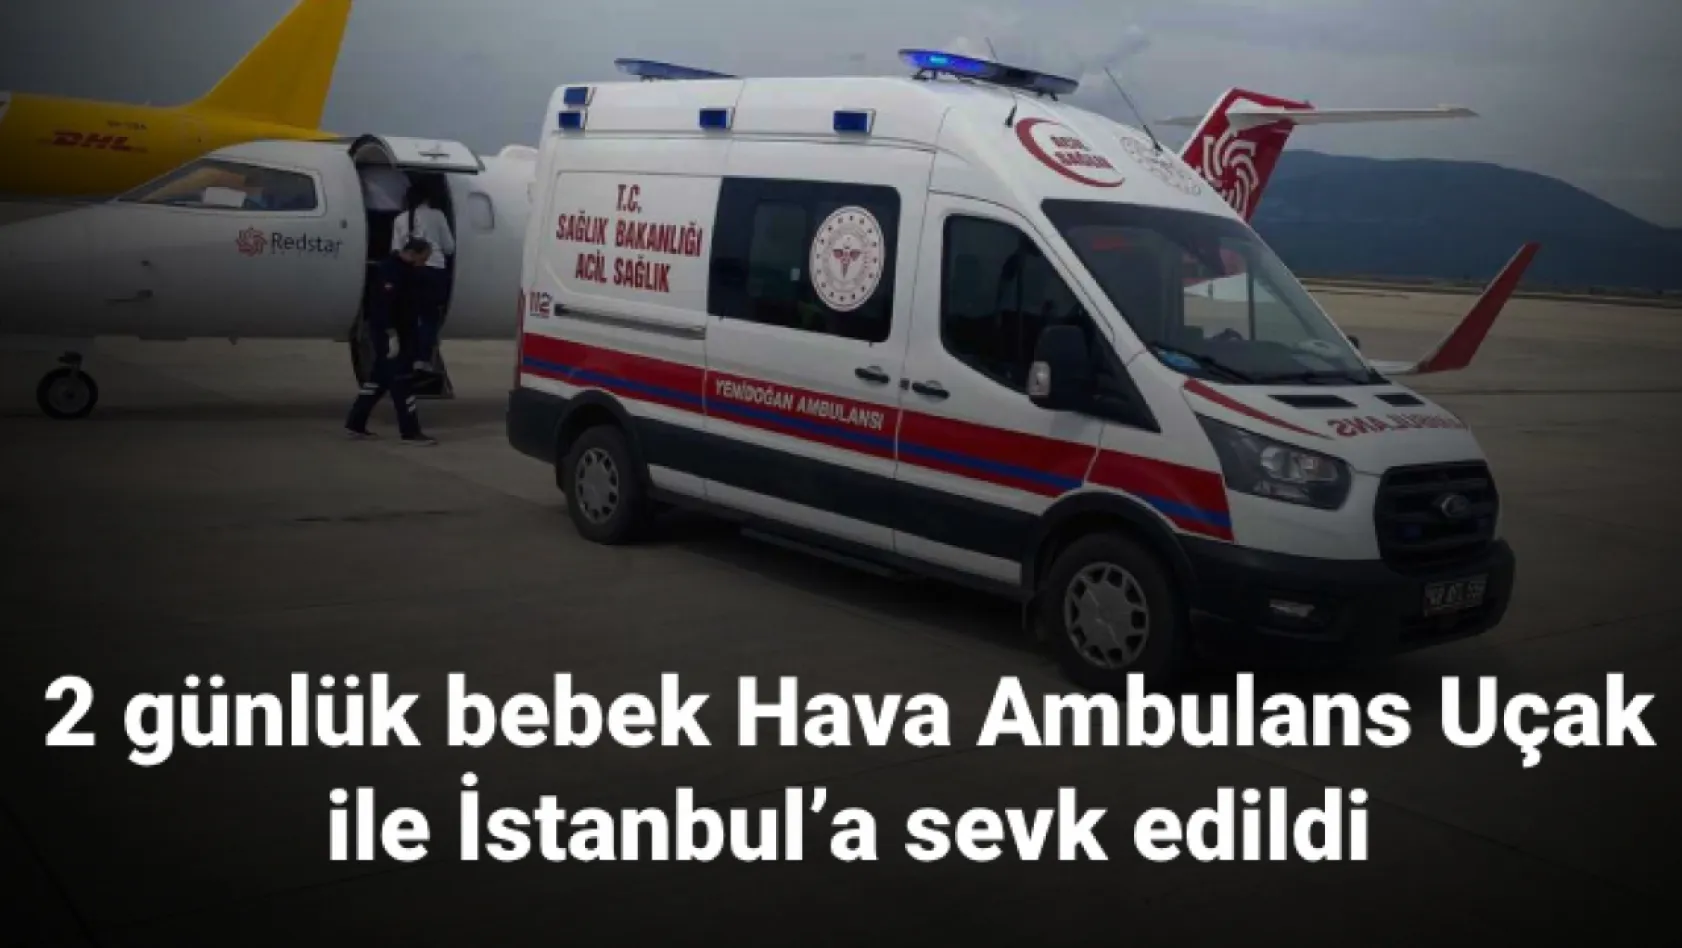 2 günlük bebek Hava Ambulans Uçak ile İstanbul'a sevk edildi